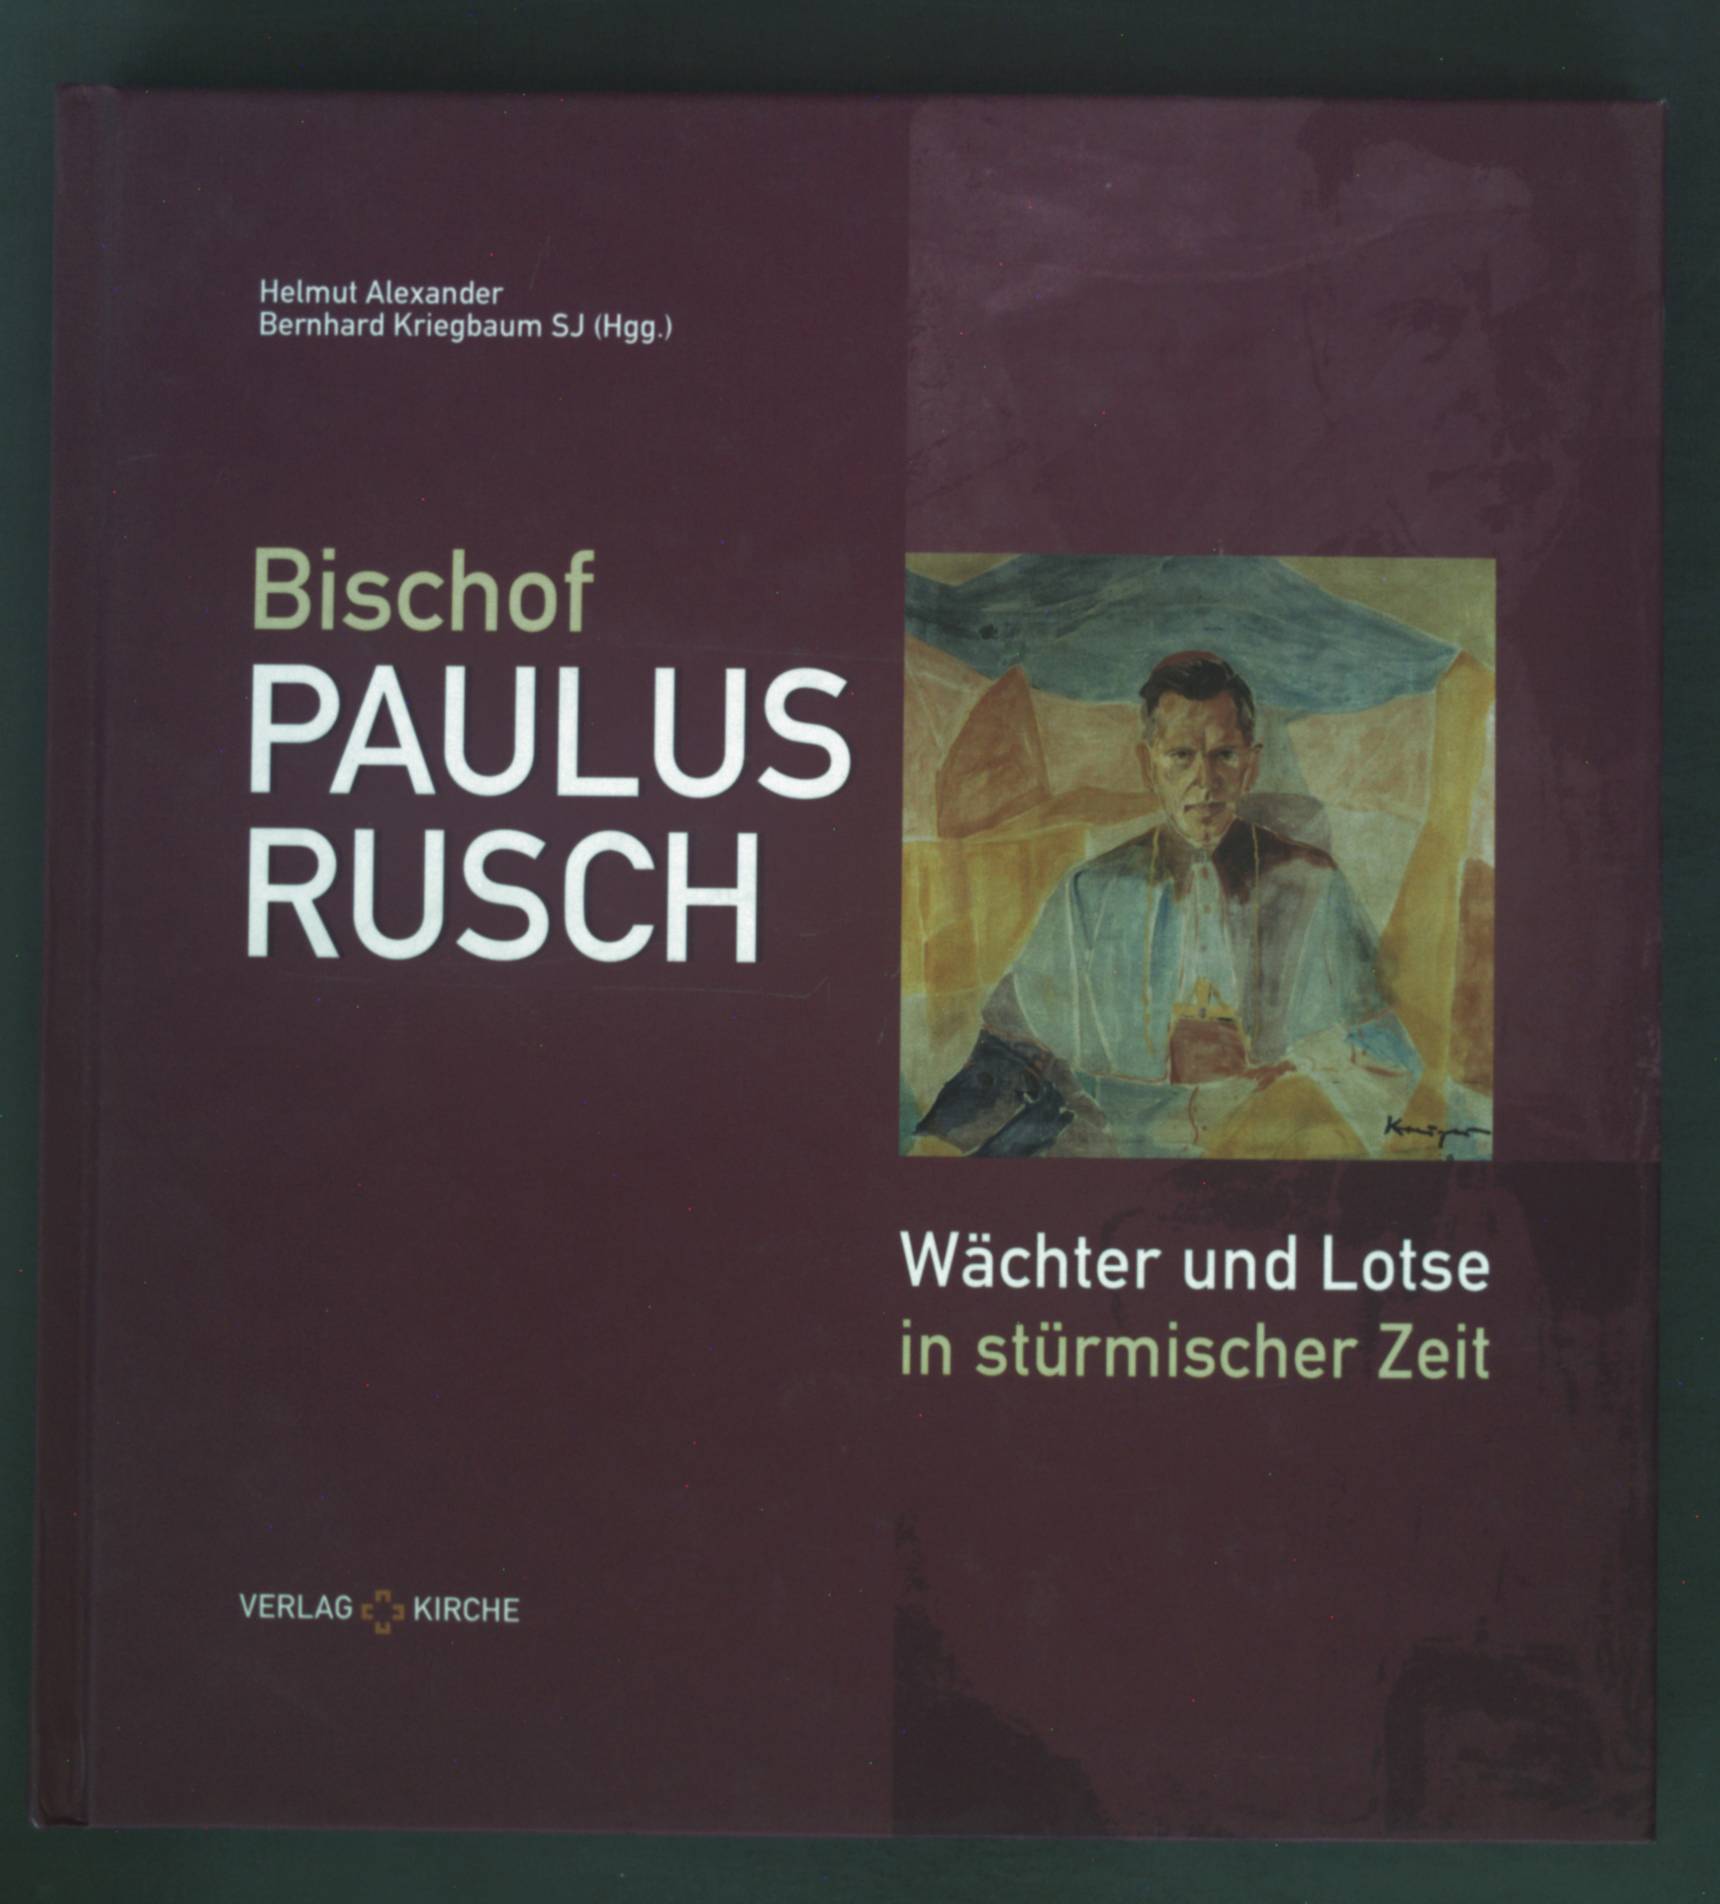 Bischof Paulus Rusch : Wächter und Lotse in stürmischer Zeit ; Gedenkschrift. - Alexander, Helmut